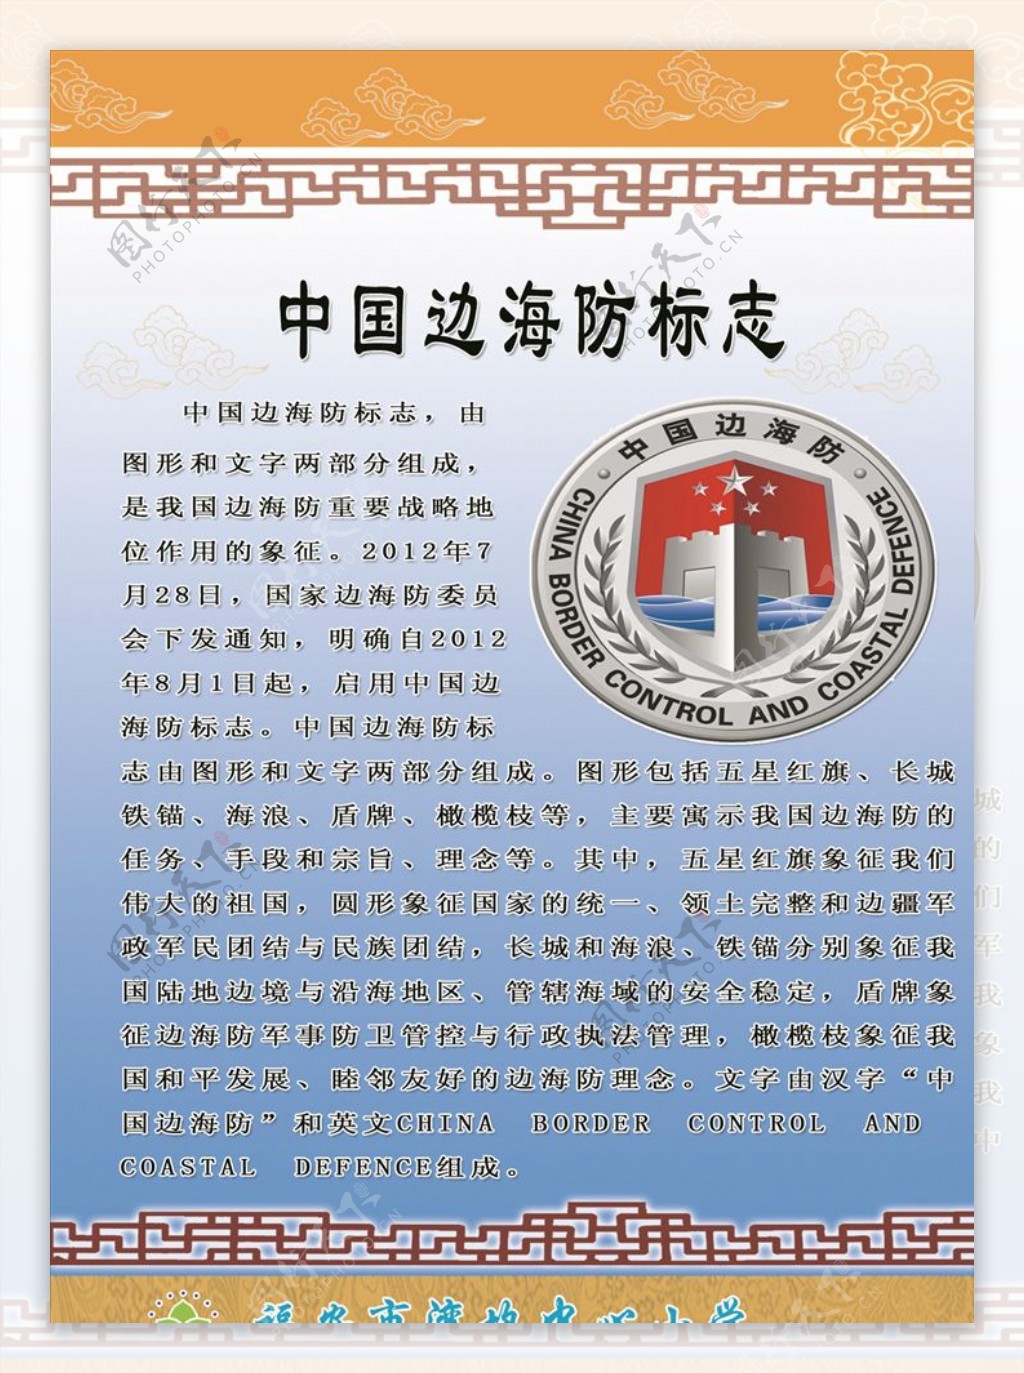 中国边海防标志海洋文化